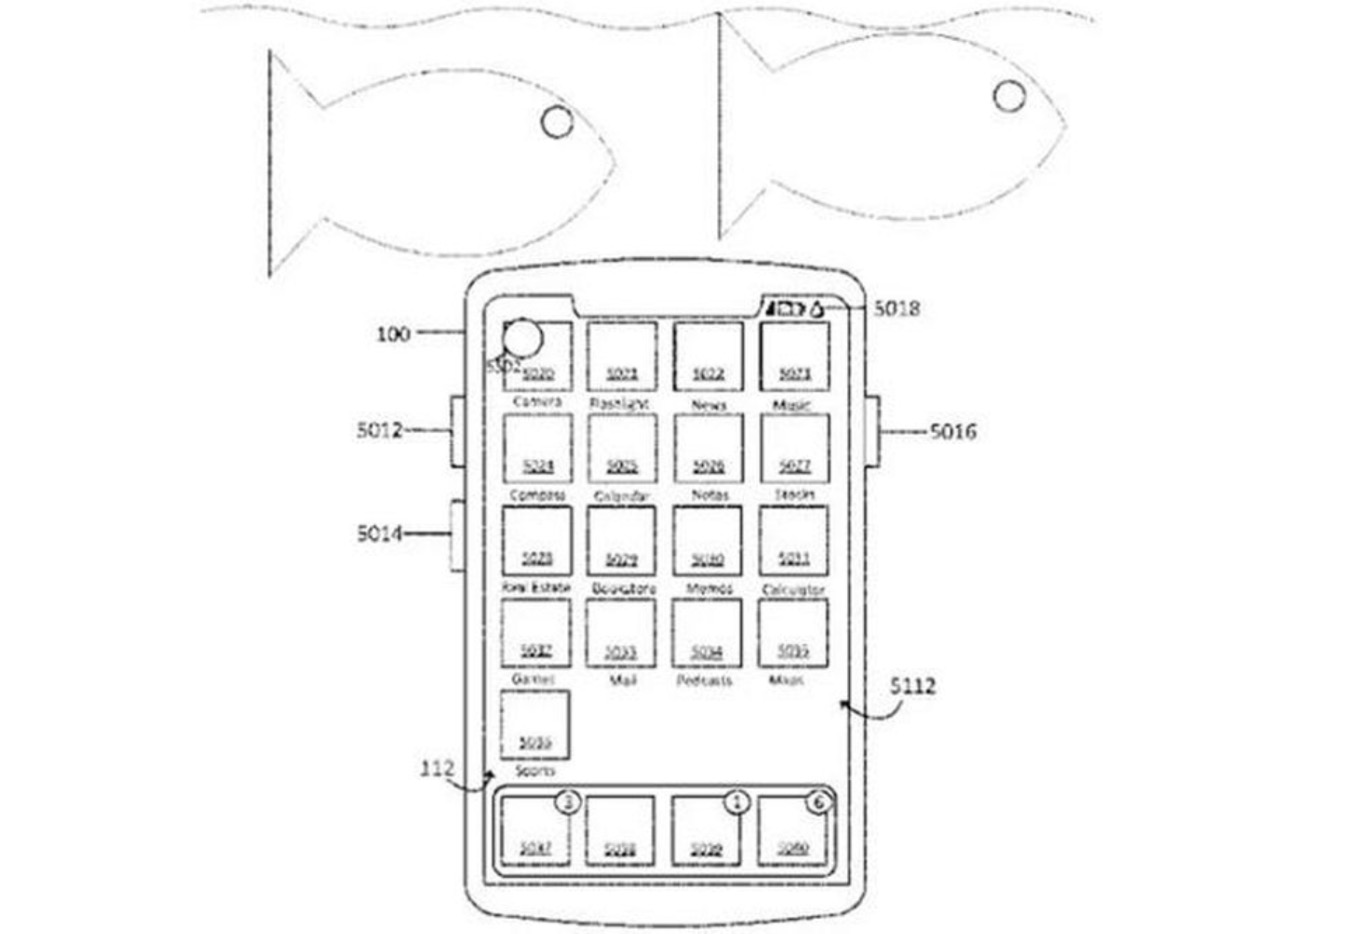 Hình ảnh minh họa mẫu iphone có thể hoạt động dưới nước trong bằng sáng chế của apple.